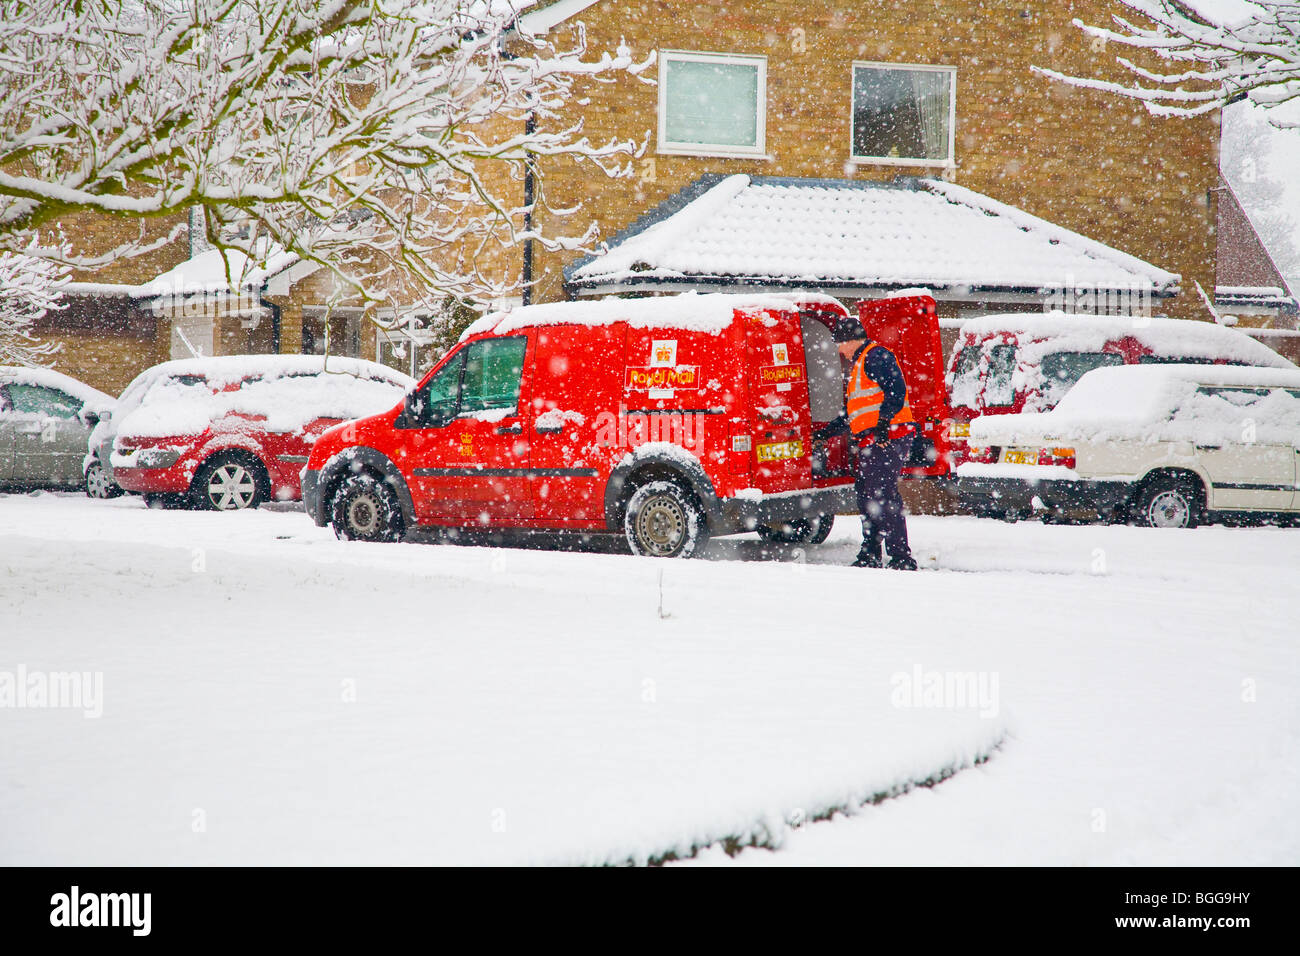 Postman livrer du courrier lors d'une forte tempête de neige Banque D'Images